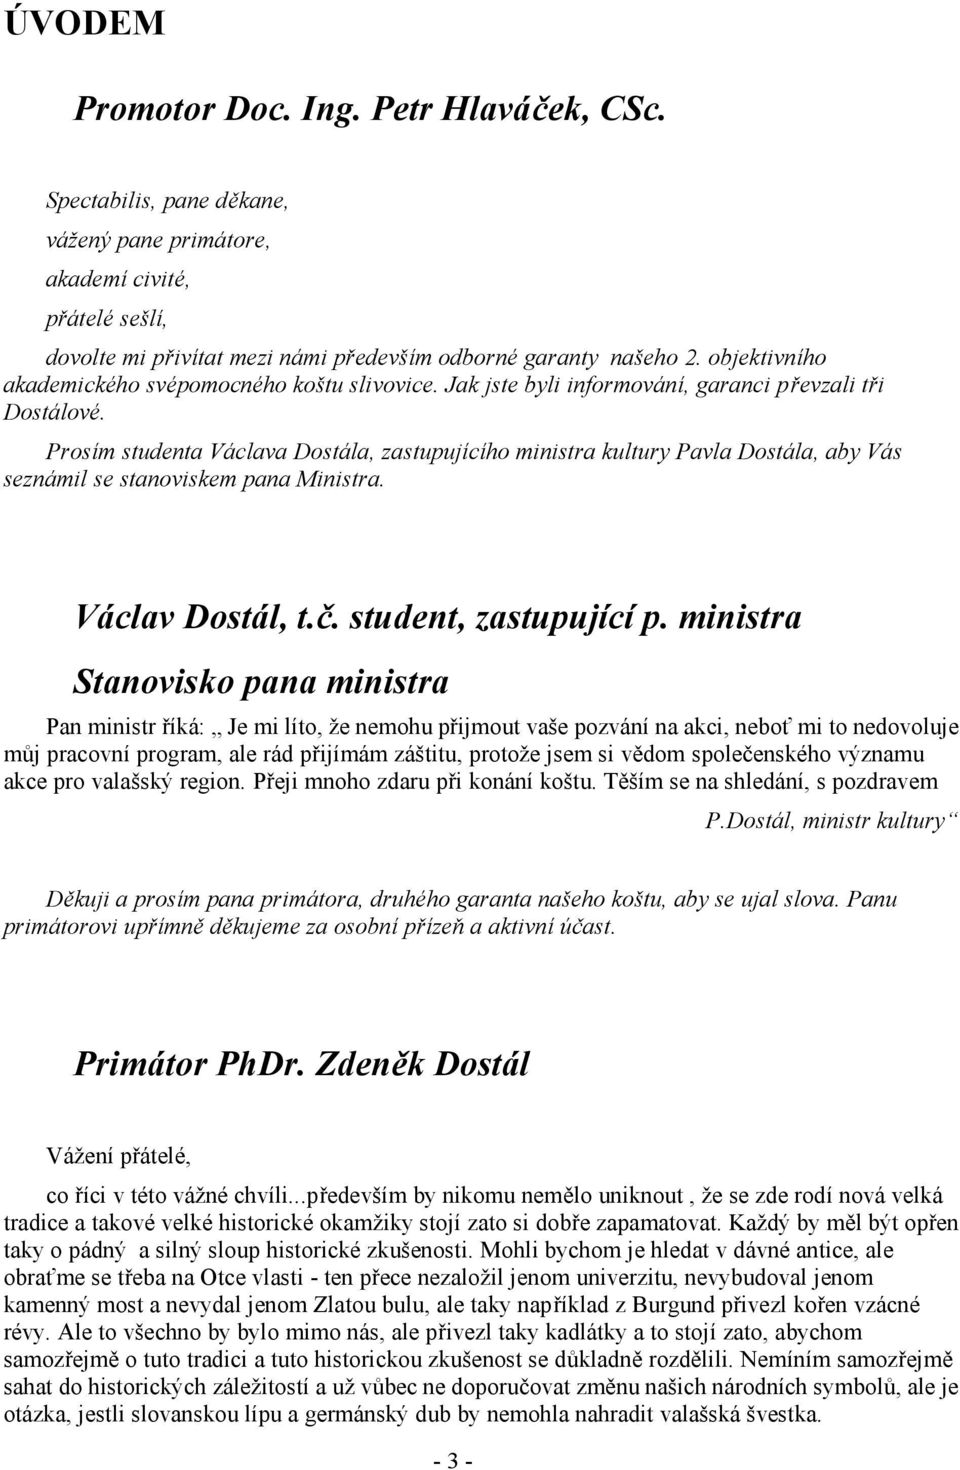 Promotor Doc. Ing. Petr Hlaváček, CSc. Václav Dostál, t.č. student,  zastupující p. ministra Stanovisko pana ministra - PDF Free Download